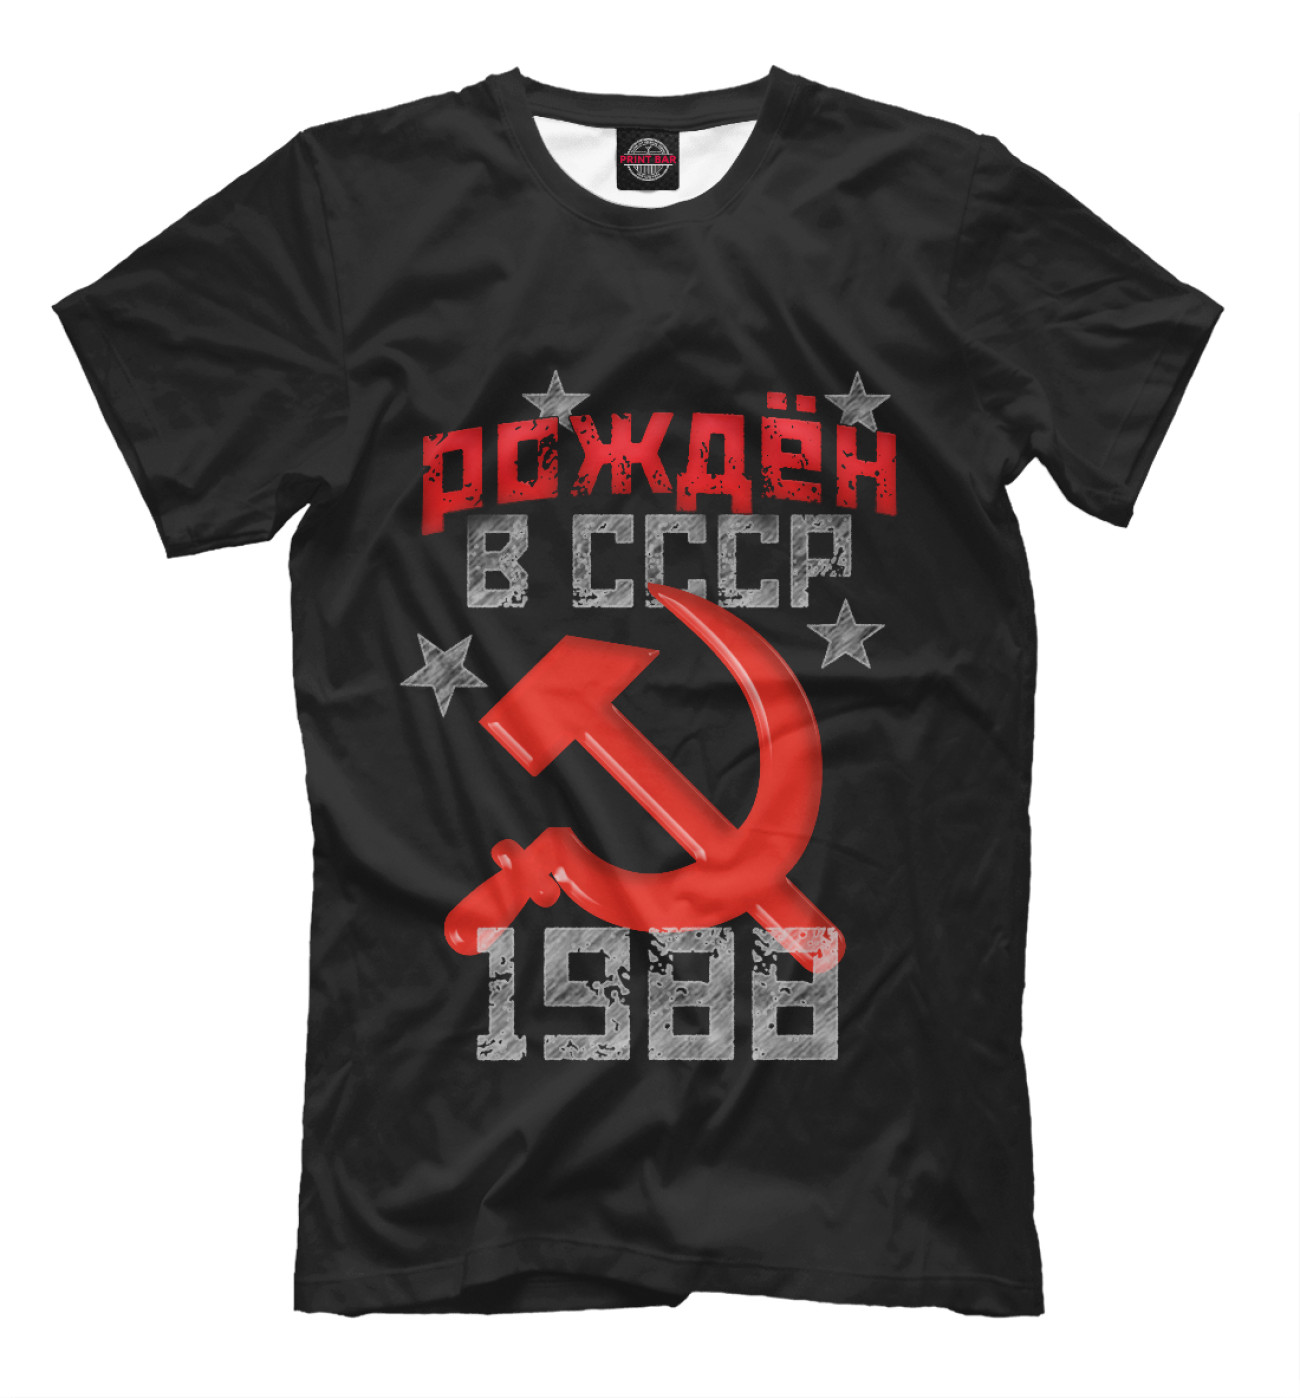 Мужская Футболка Рожден в СССР 1988, артикул: DVV-840095-fut-2